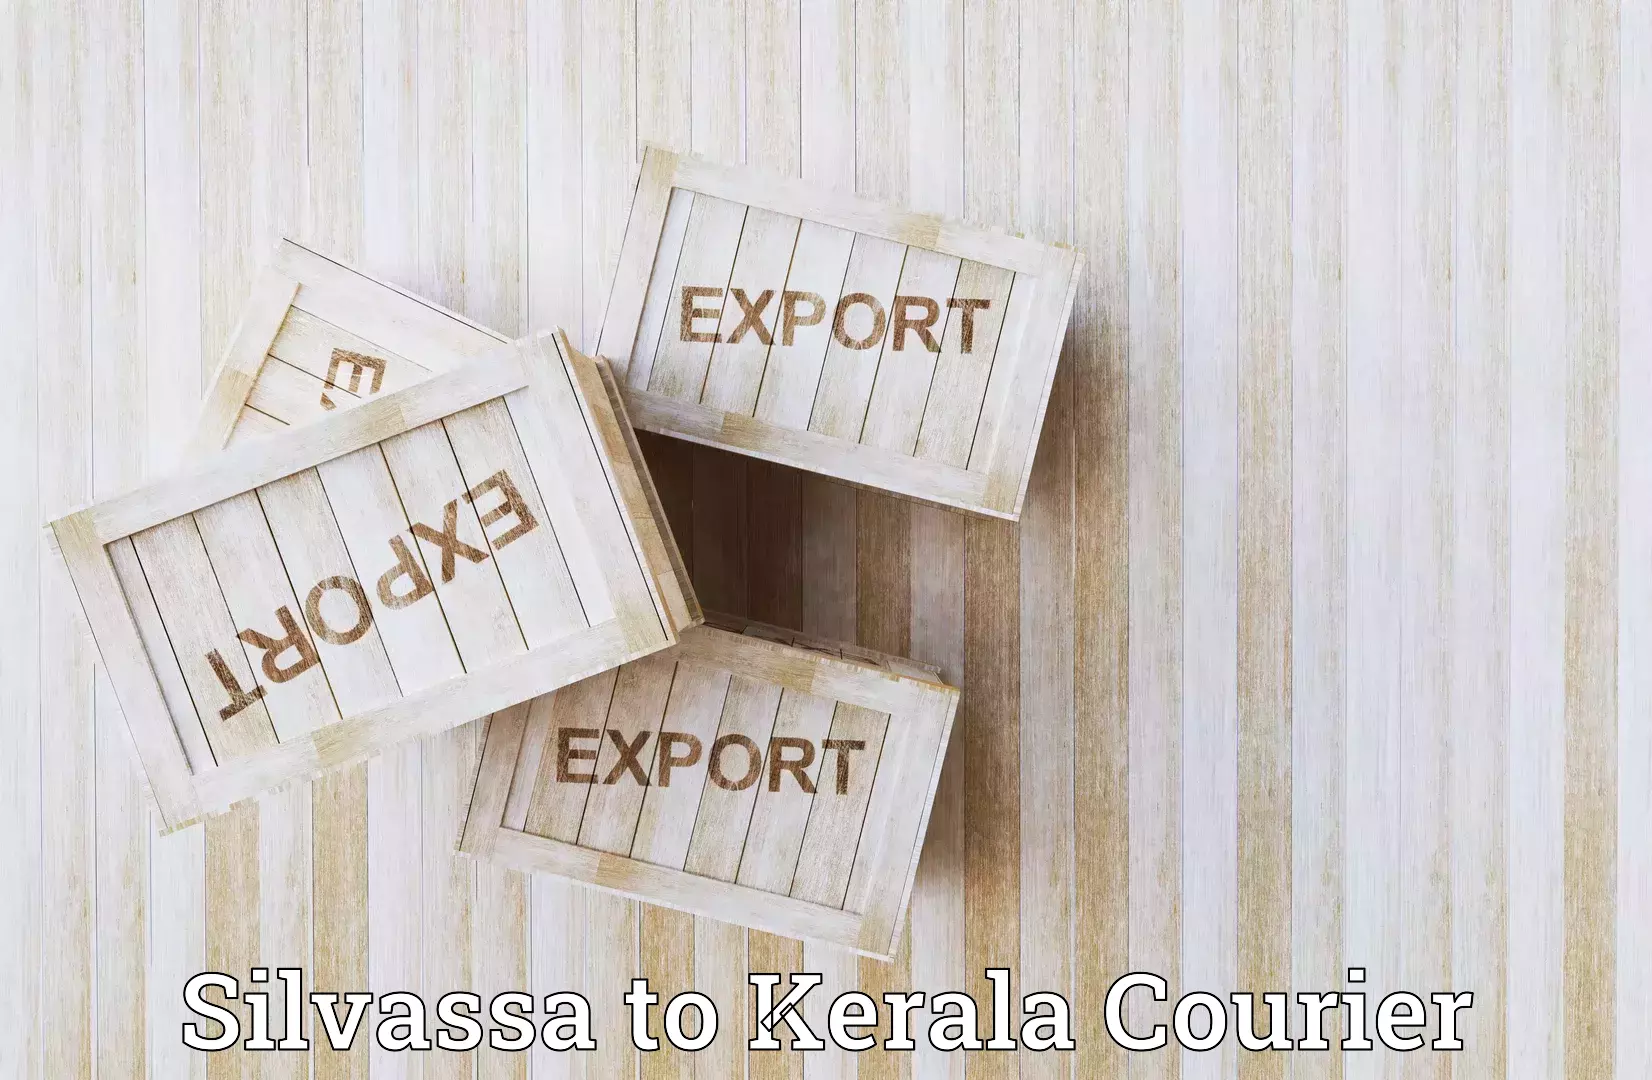 Efficient cargo services Silvassa to Kochi